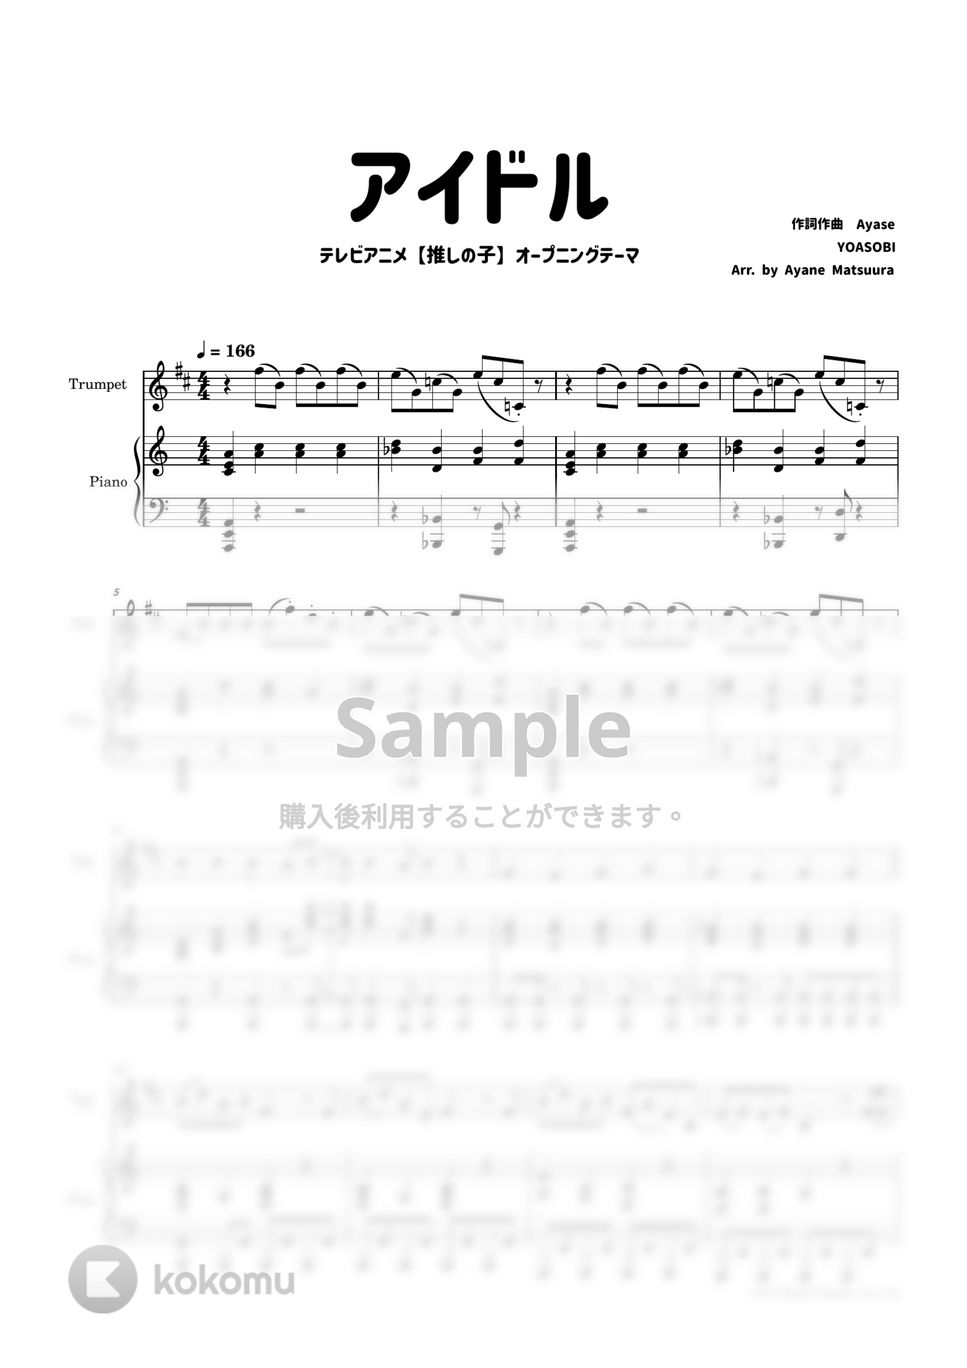 YOASOBI - アイドル [トランペット＆ピアノ] YOASOBI (アニメ「推しの子」) by 管楽器の楽譜★ふるすこあ